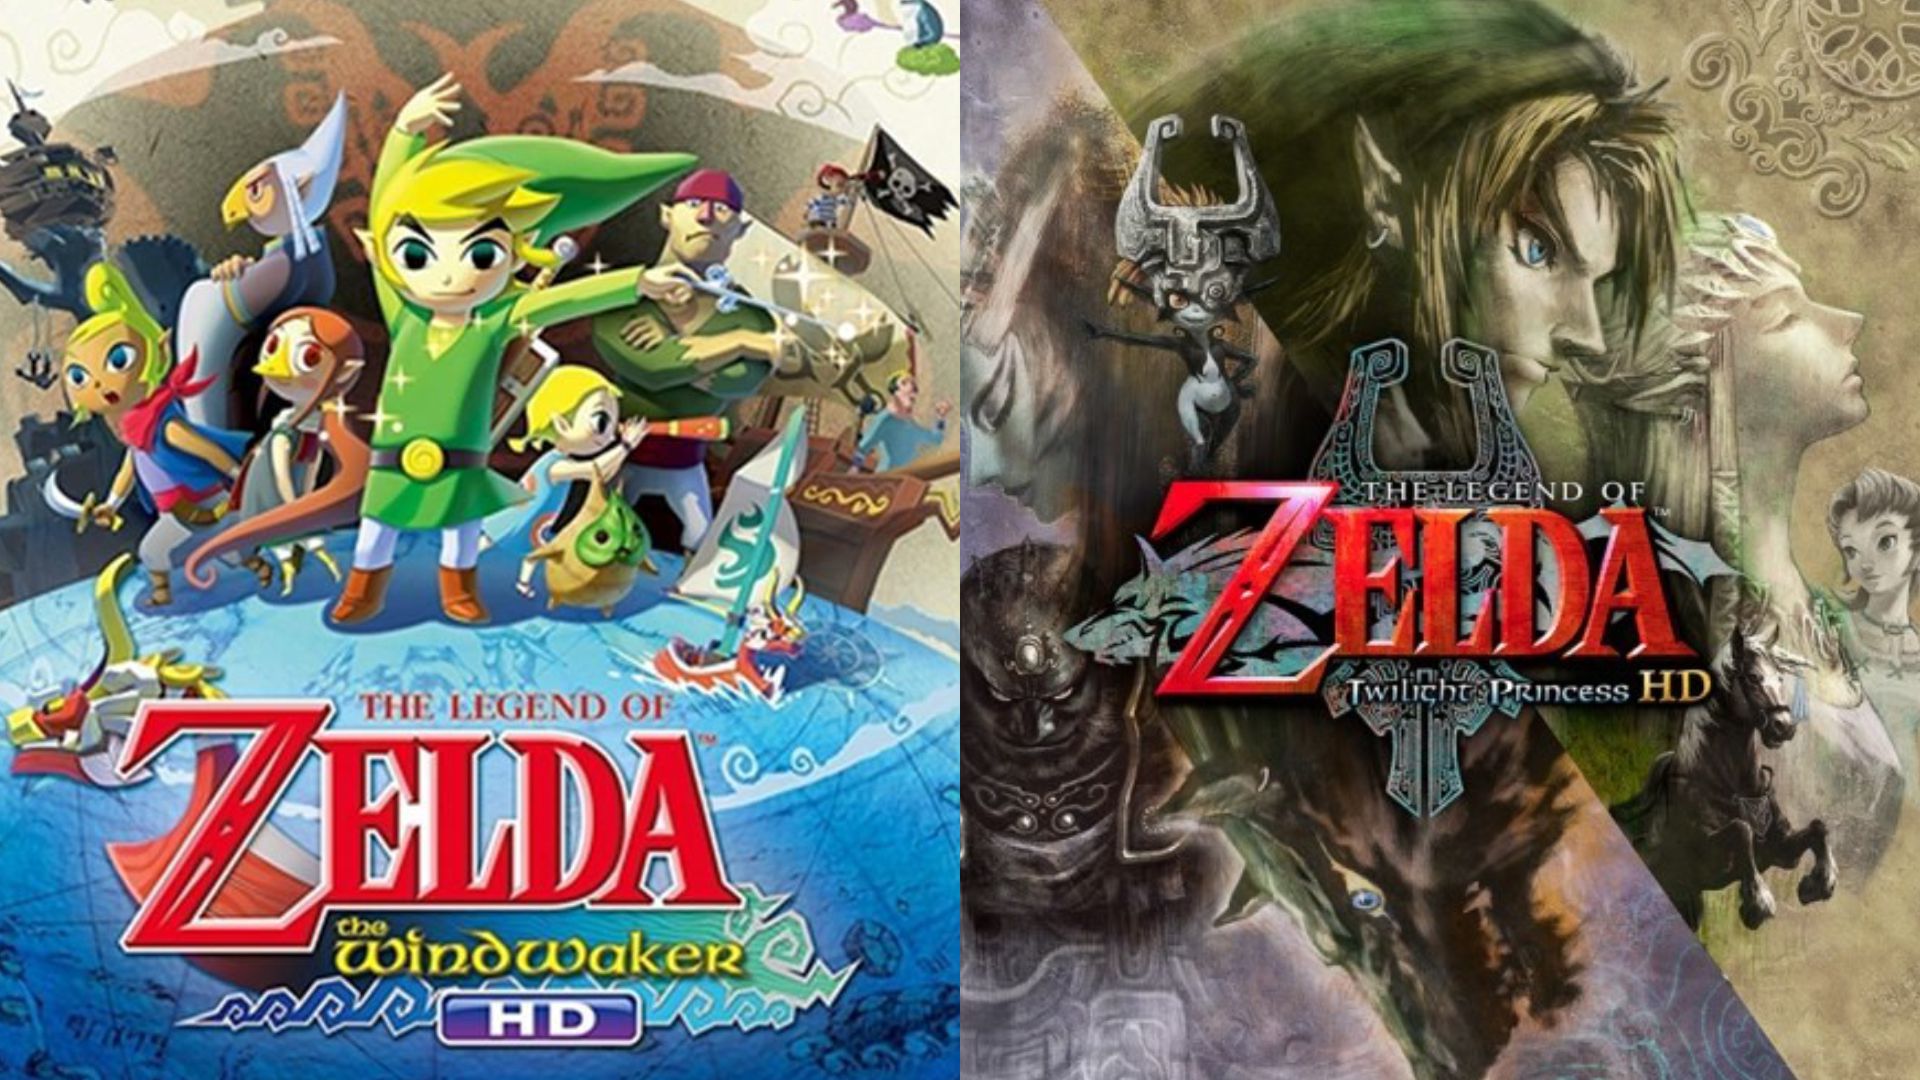  The Legend of Zelda™: The Wind Waker (HD Deluxe Set